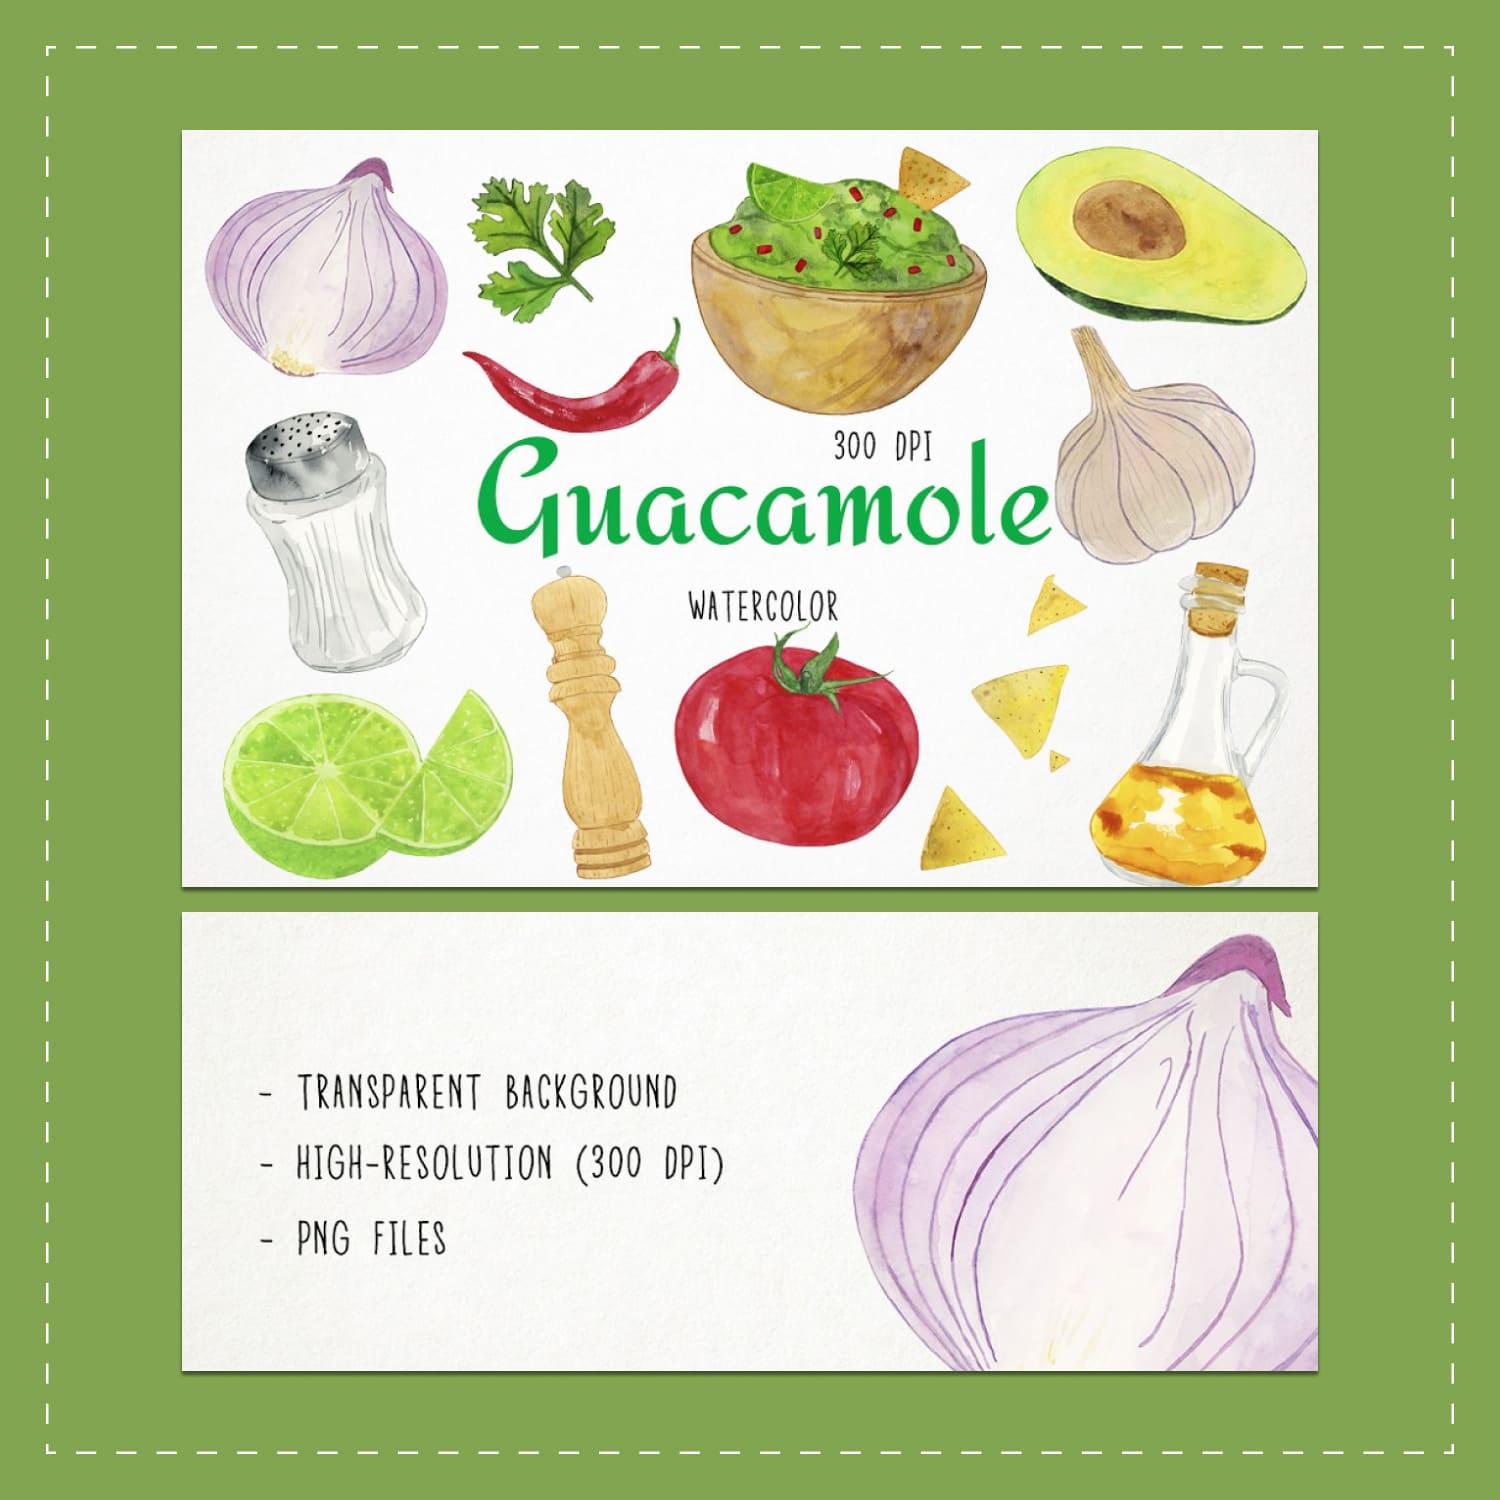 guacamole clipart image